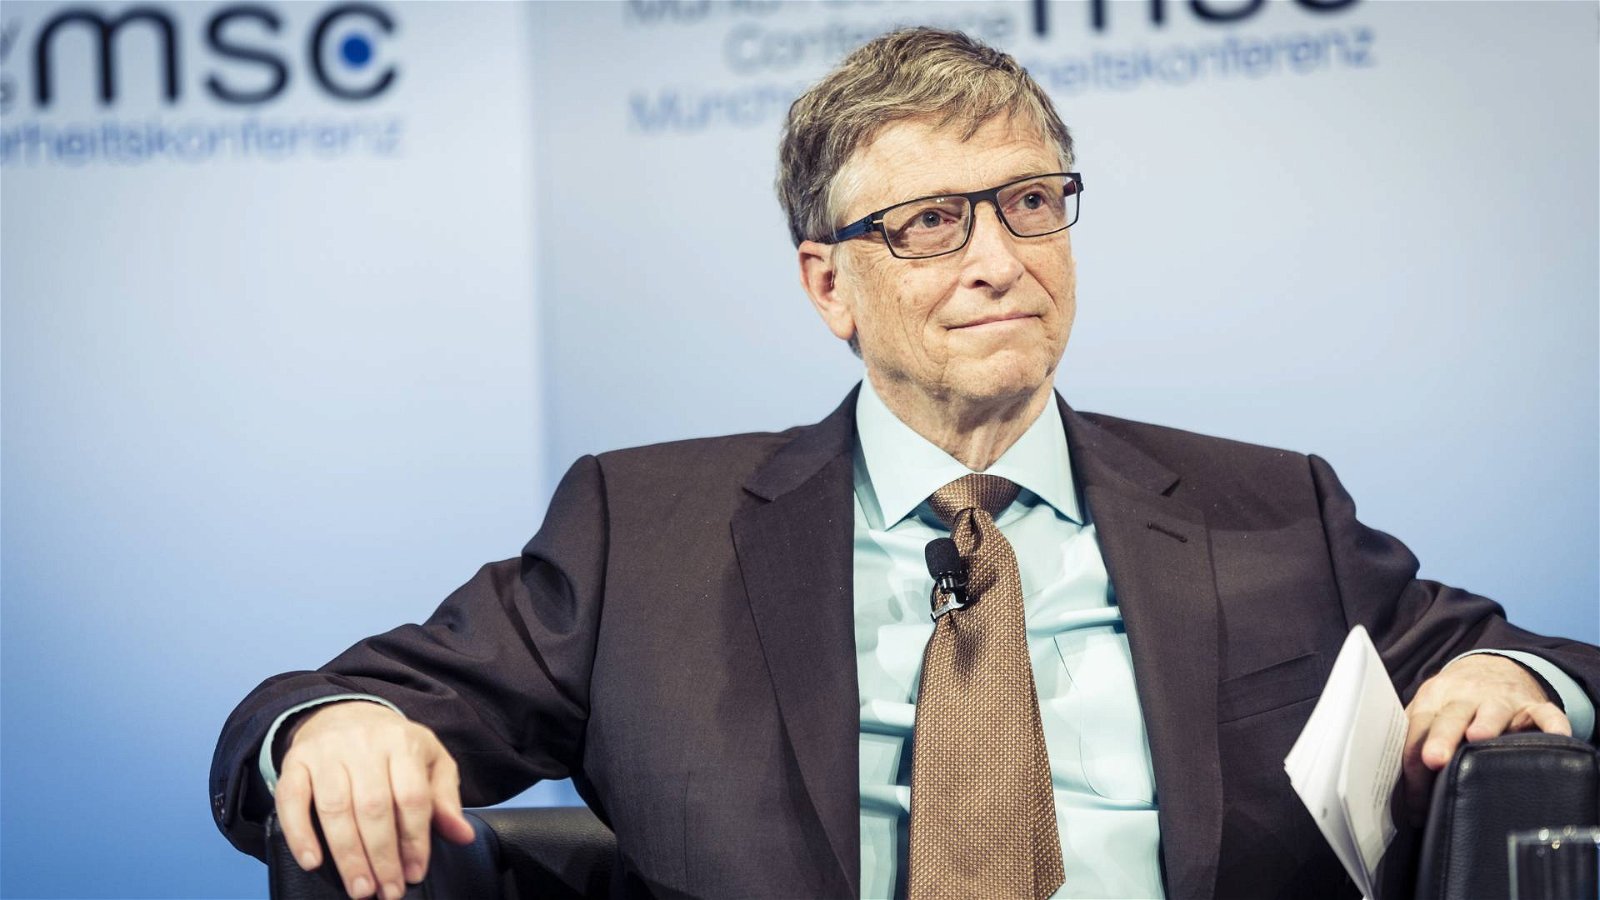 Immagine di Bill Gates ha ragione, Microsoft aveva tutte le carte in regola per sfondare nel mercato smartphone